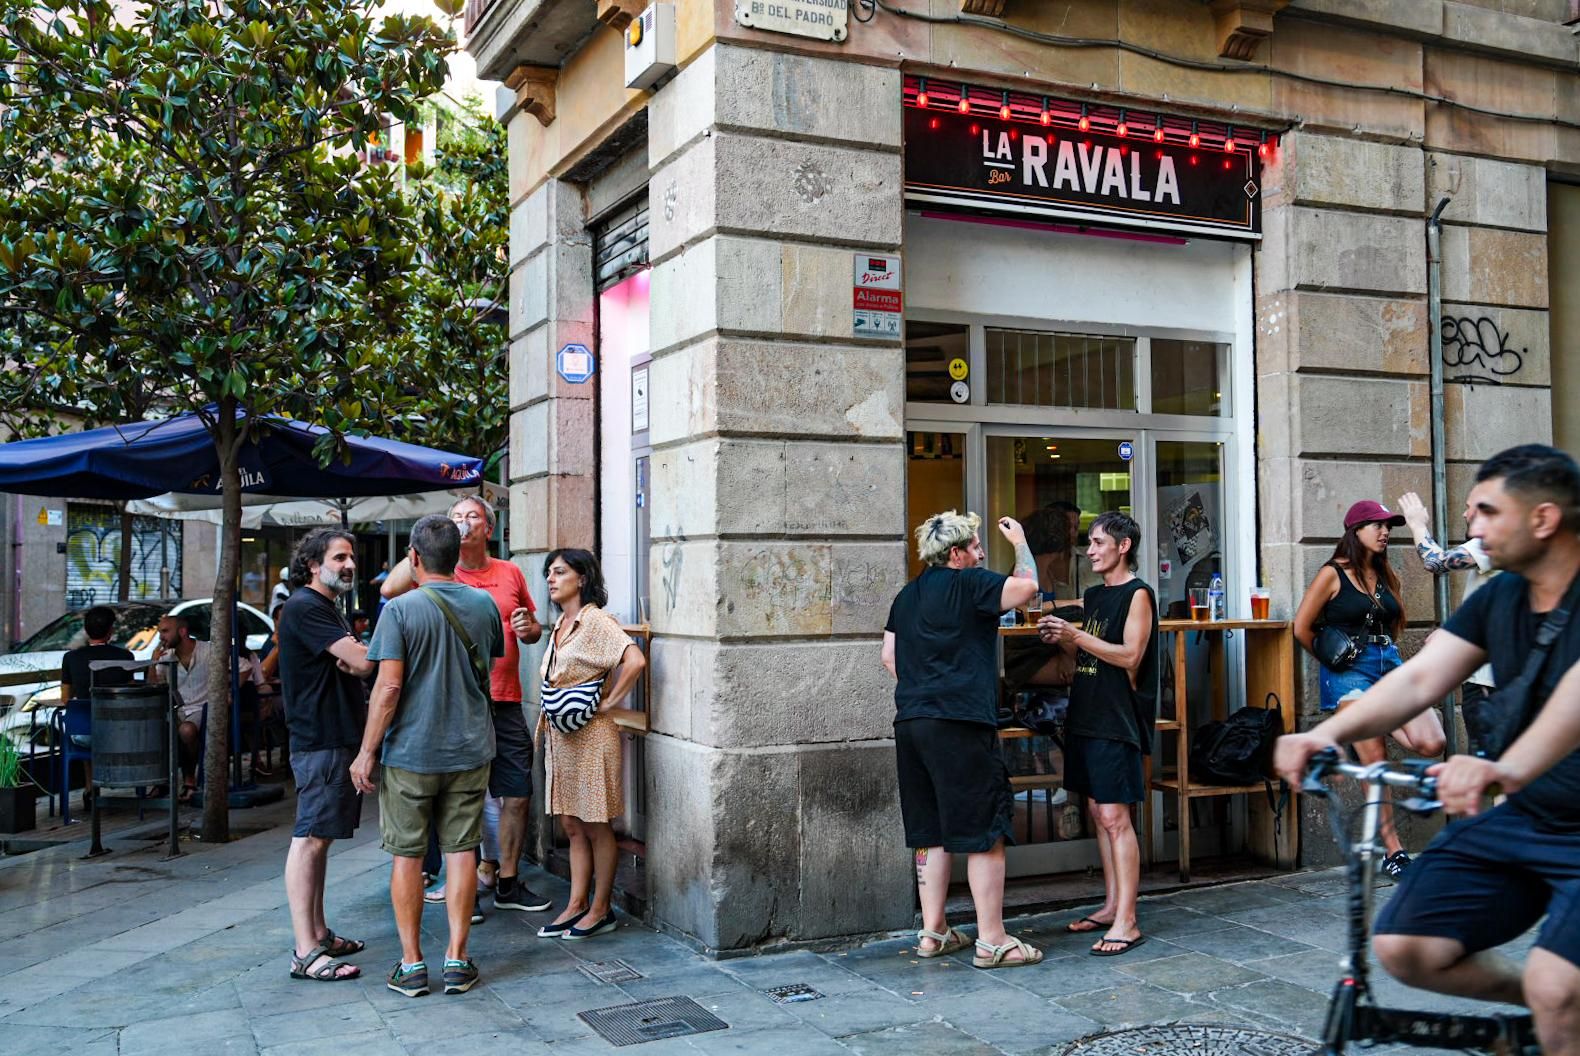 La Ravala, el bar donde se produjo el brote de salmonelosis el sábado 20 de julio.